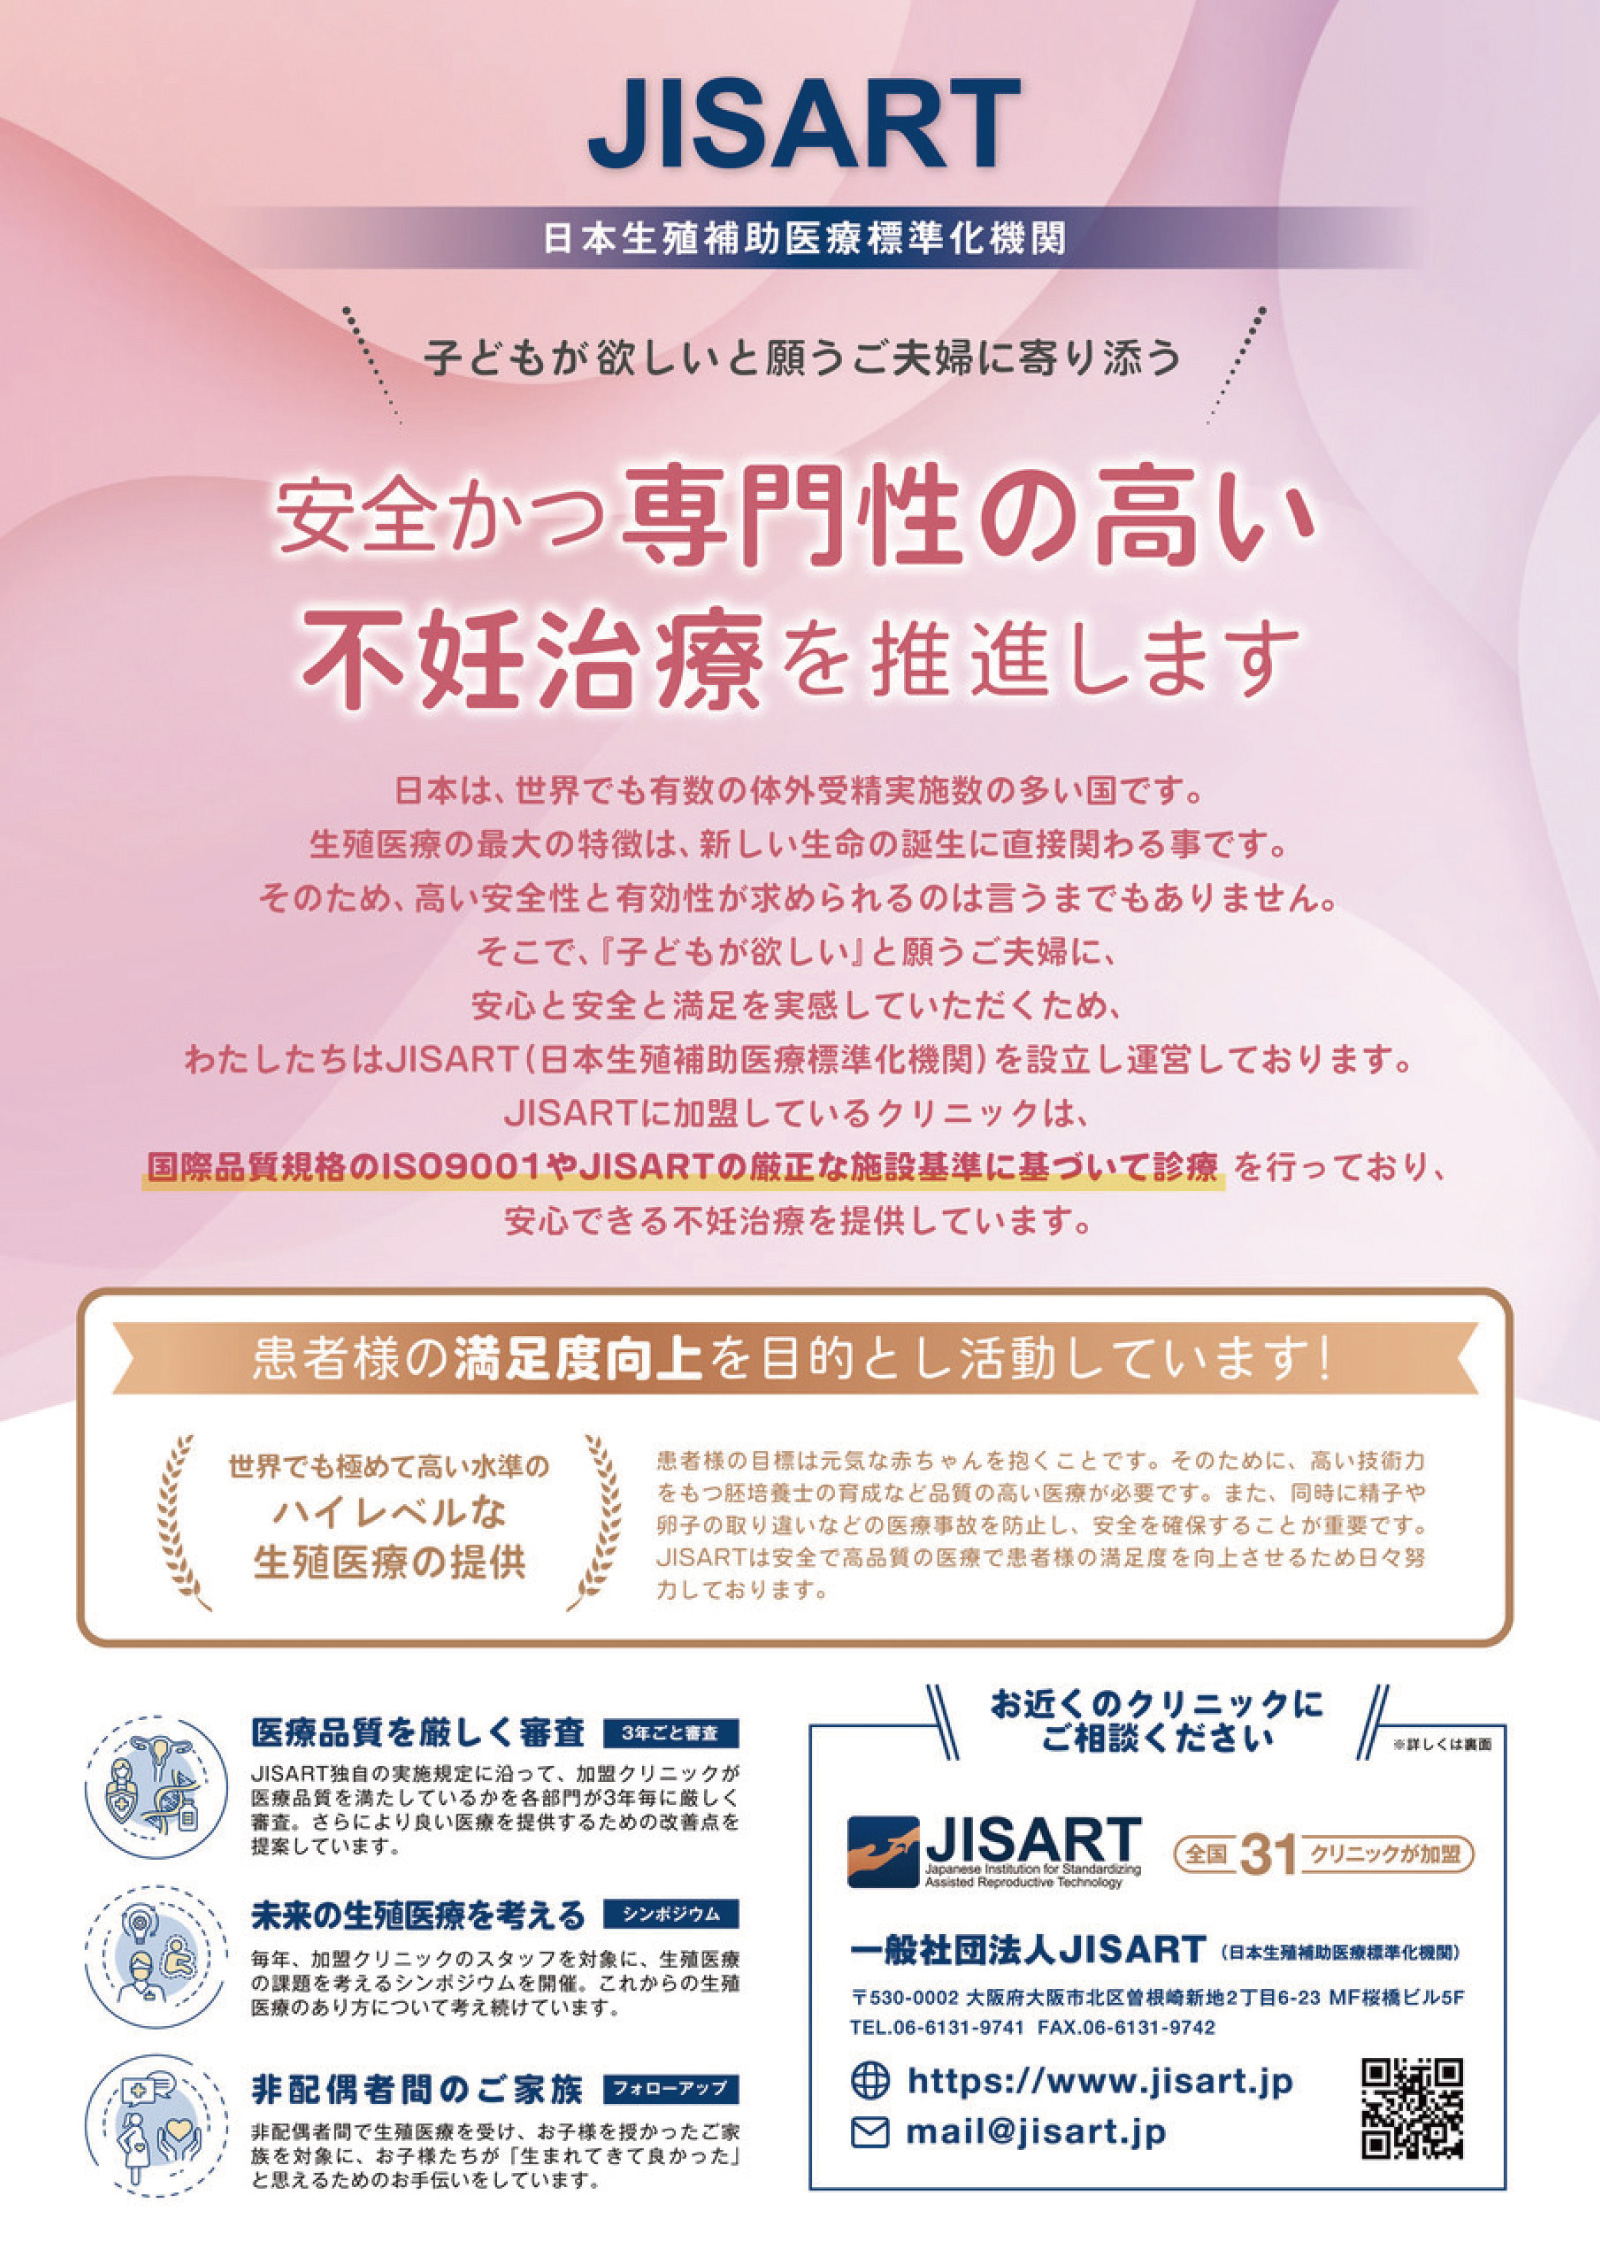 JISART［日本生殖補助医療標準化機関］